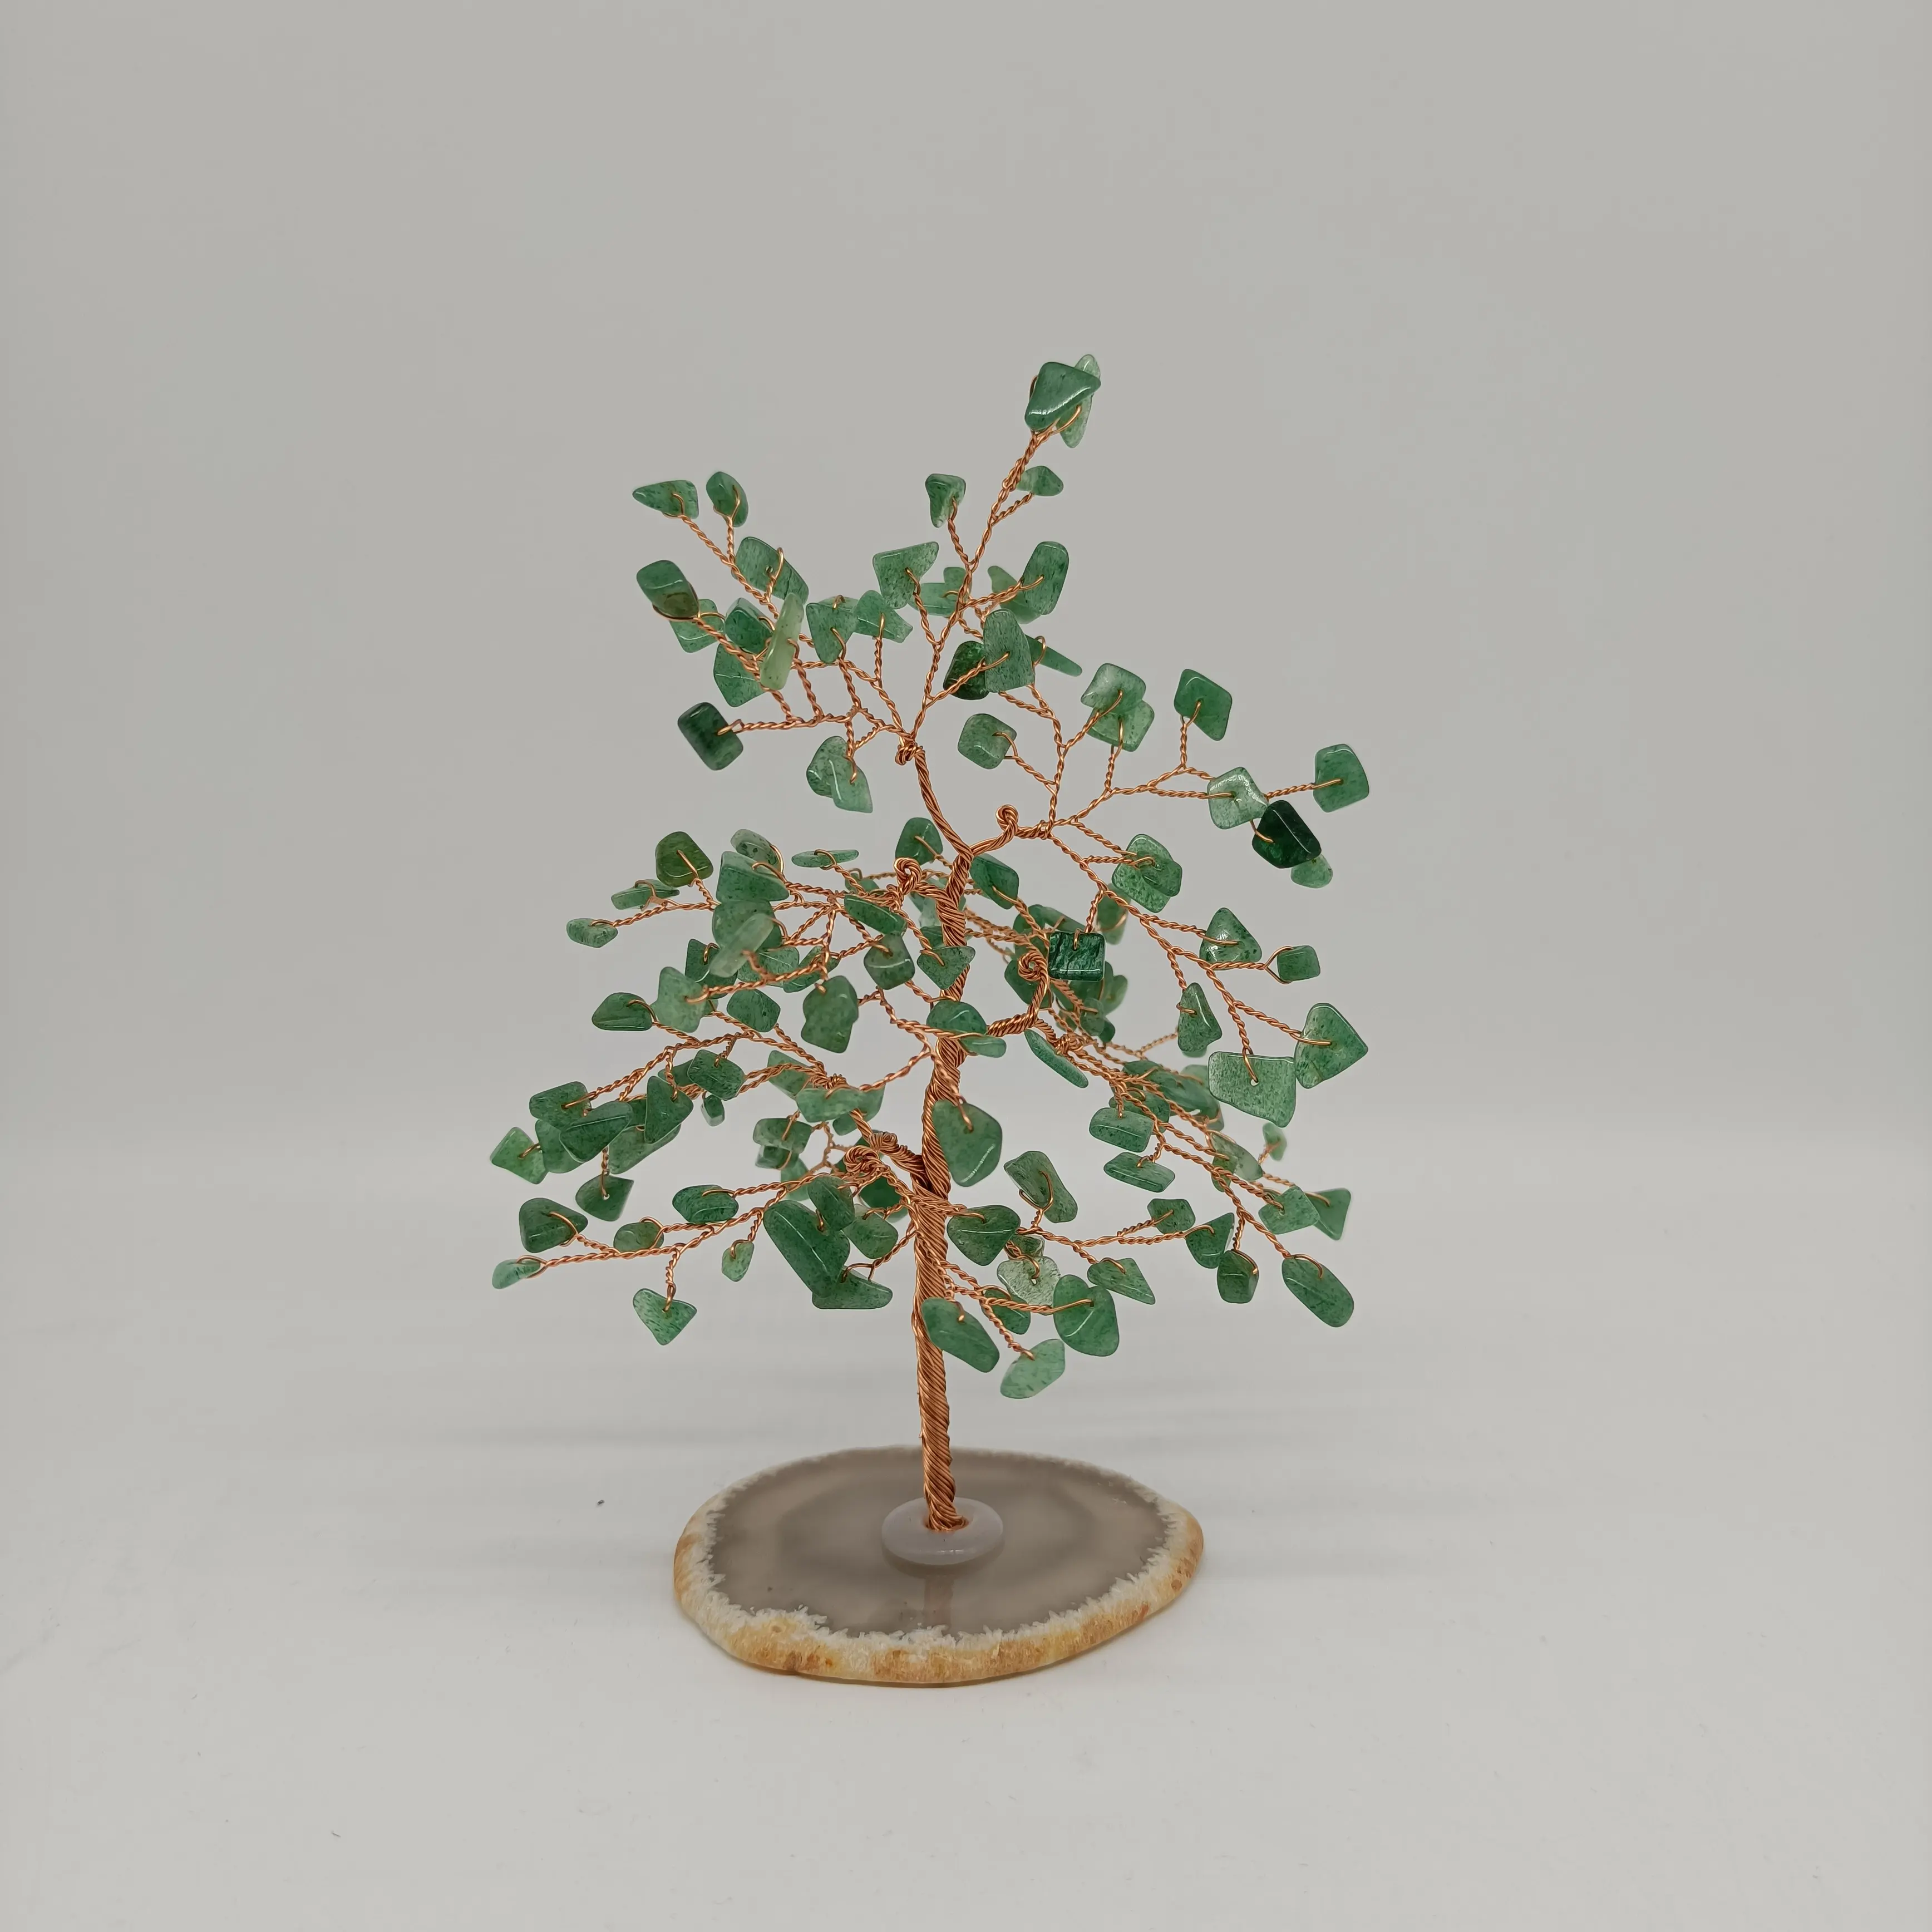 شجرة الحياة الطبيعية, عرض خاص شجرة الحياة الطبيعية كريستال كتاب الوردي الكوارتز شجرة المال أشجار الكوارتز